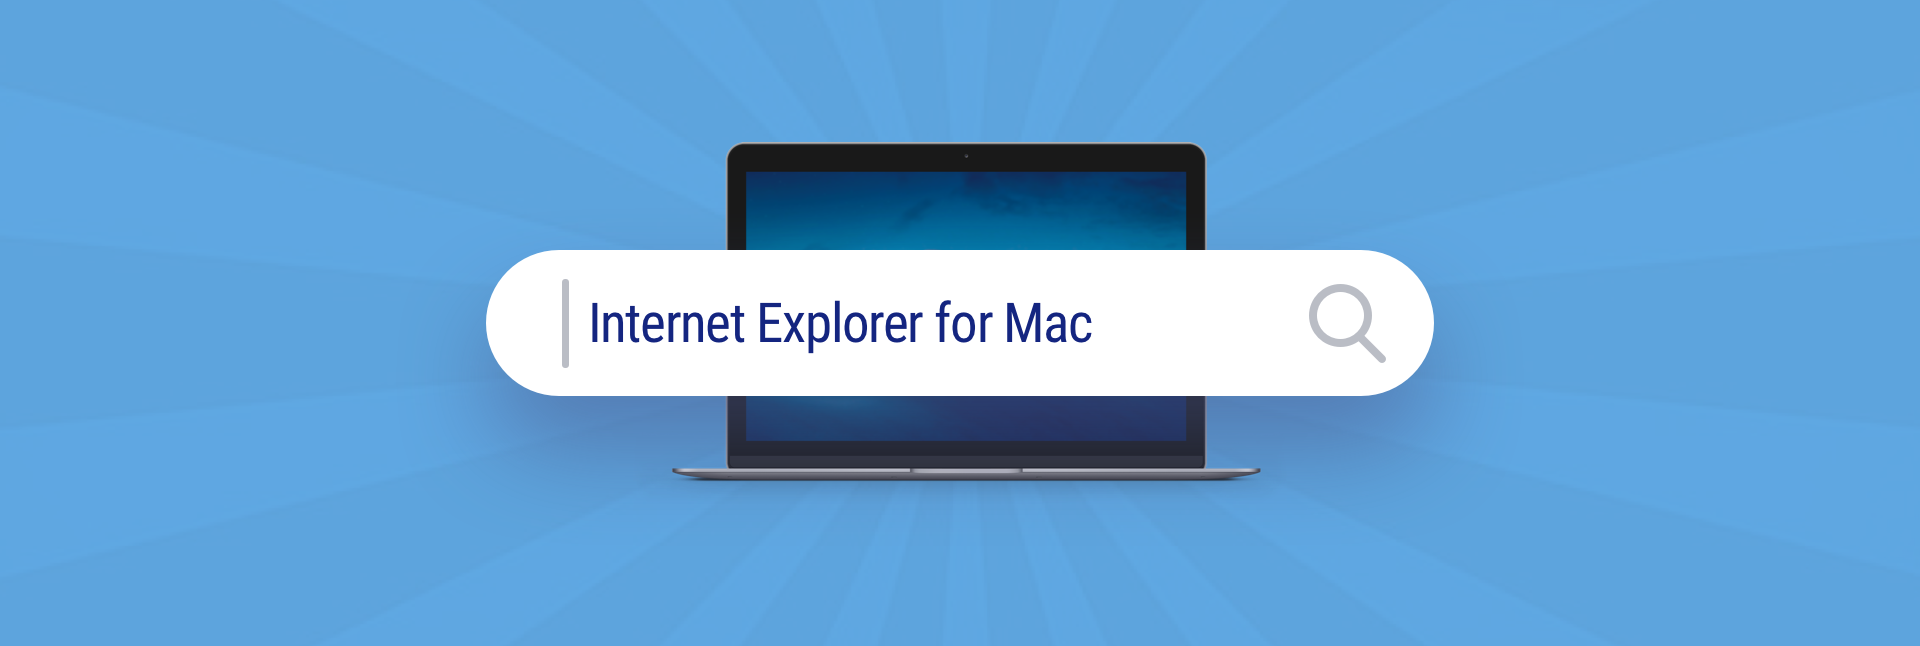 internet explorer for mac os mojave